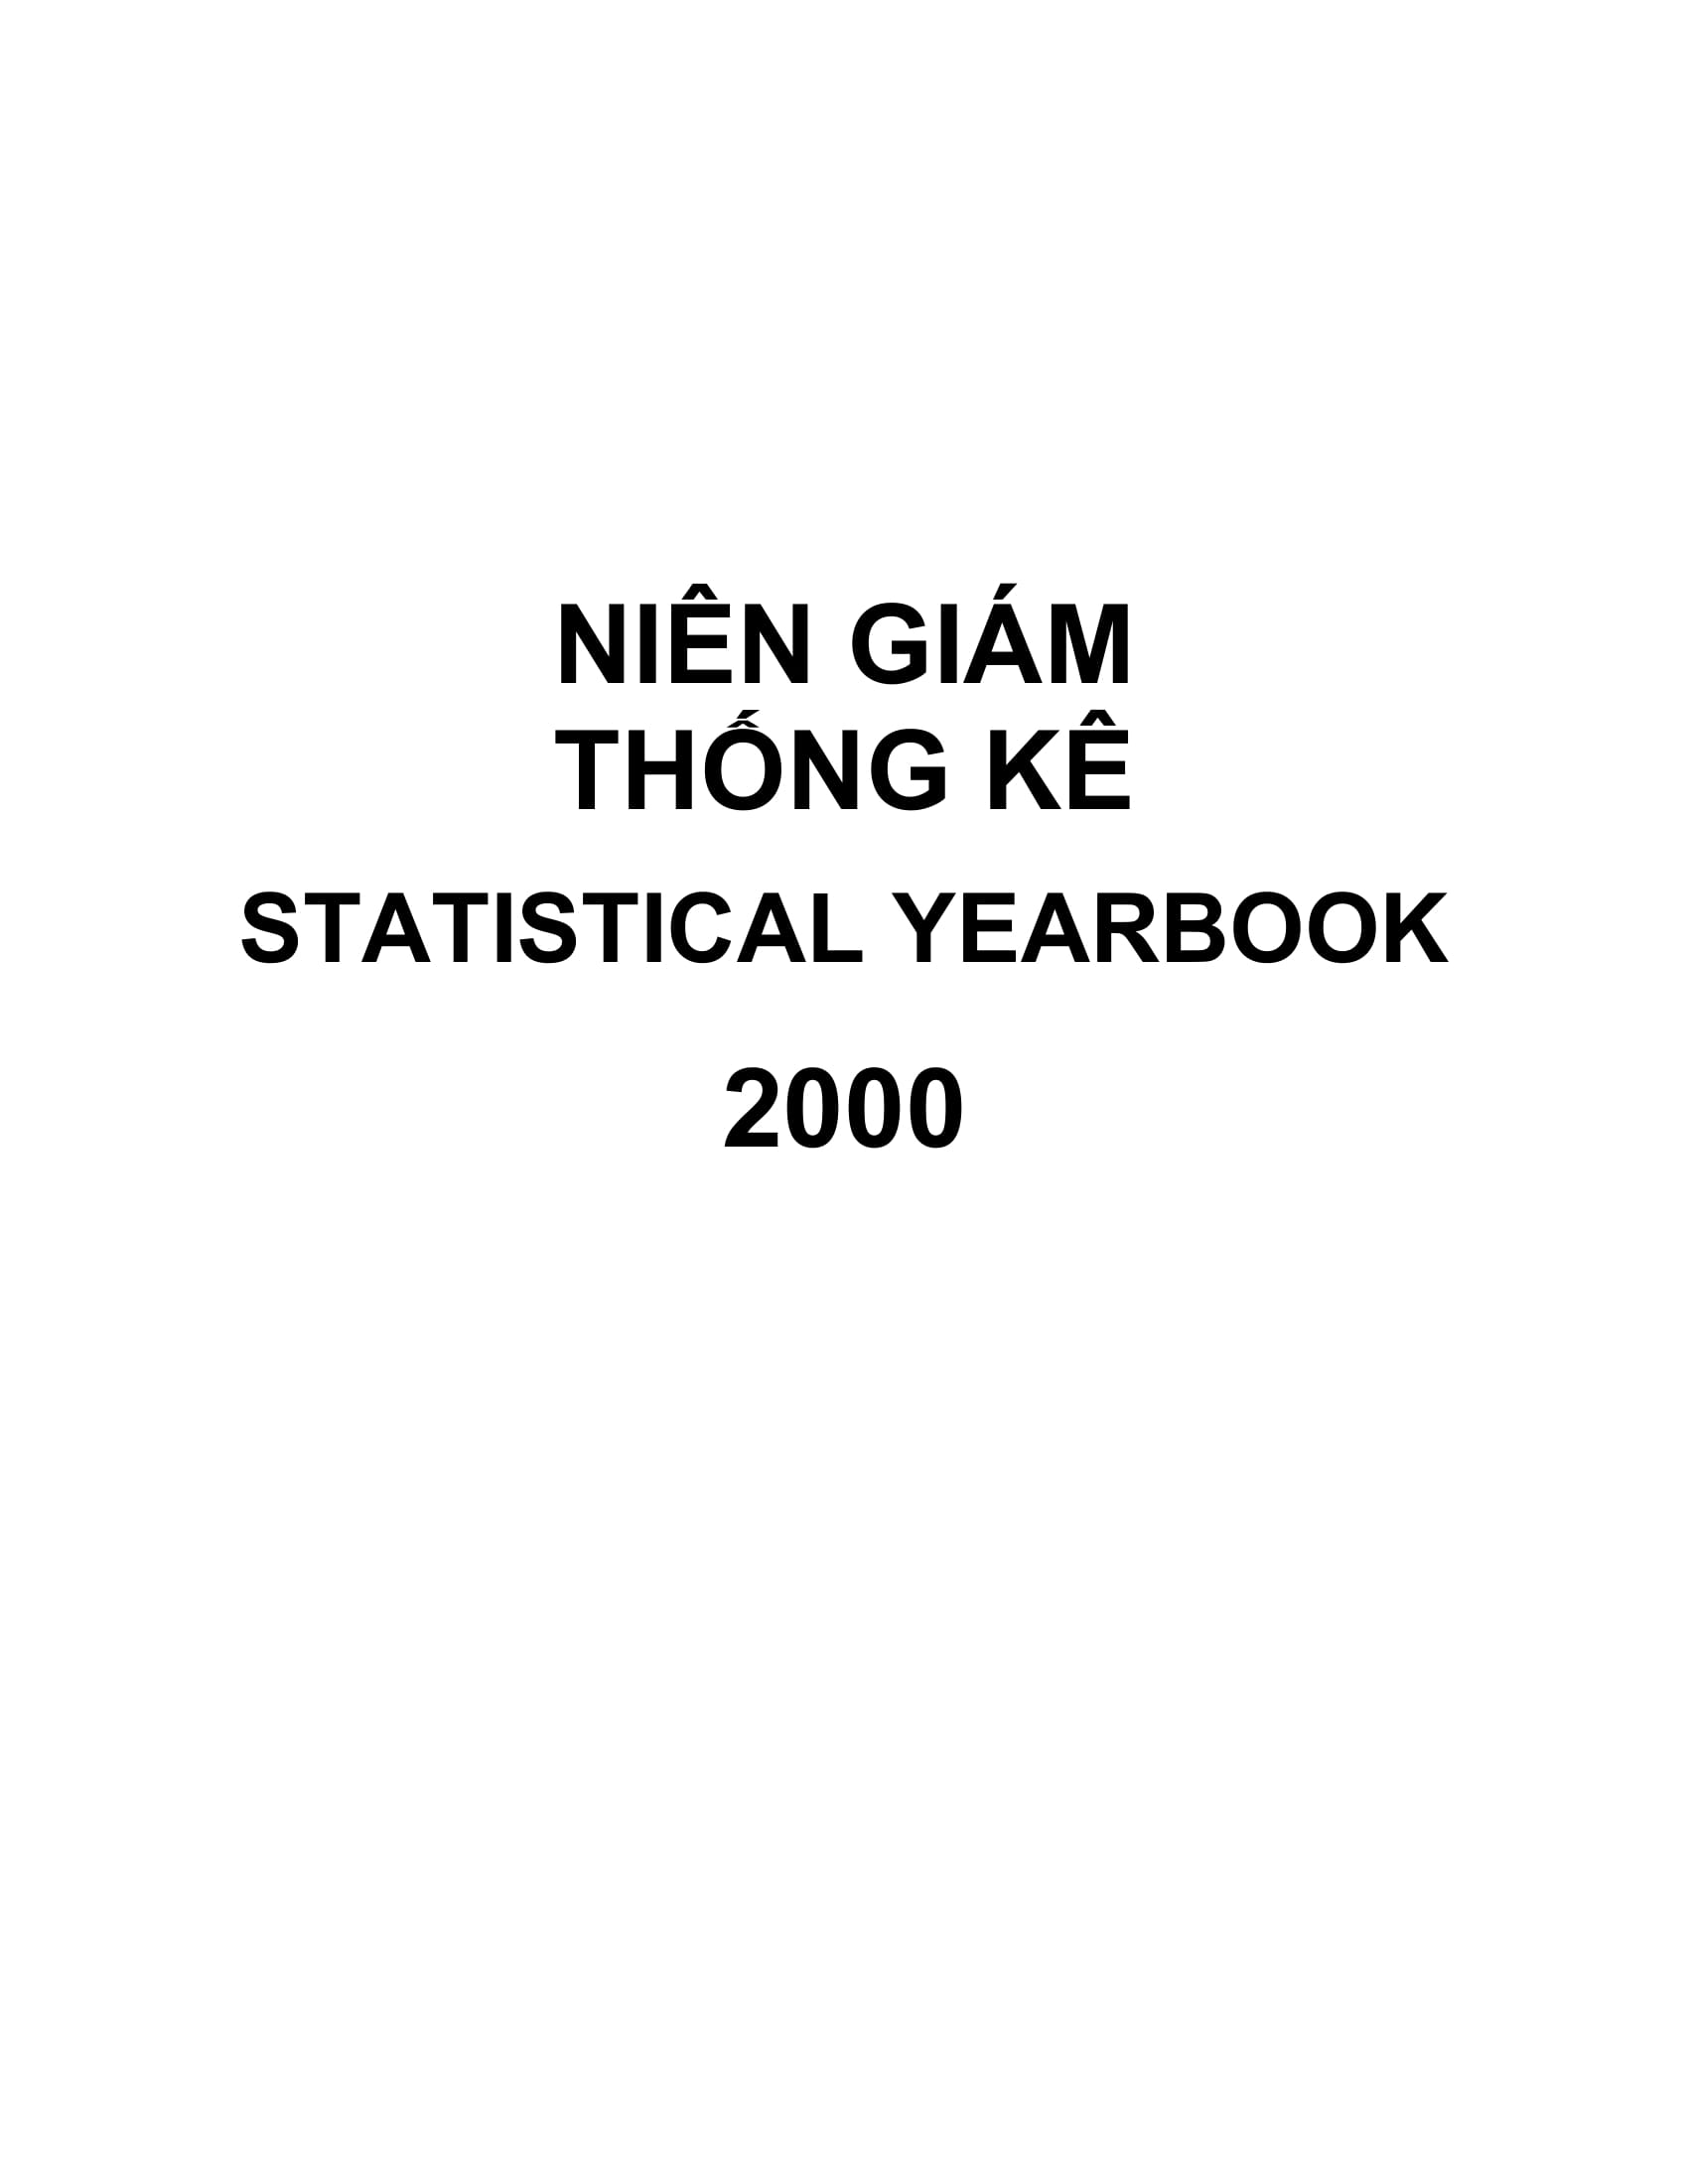 Niên giám thống kê huyện Phú Ninh năm 2020